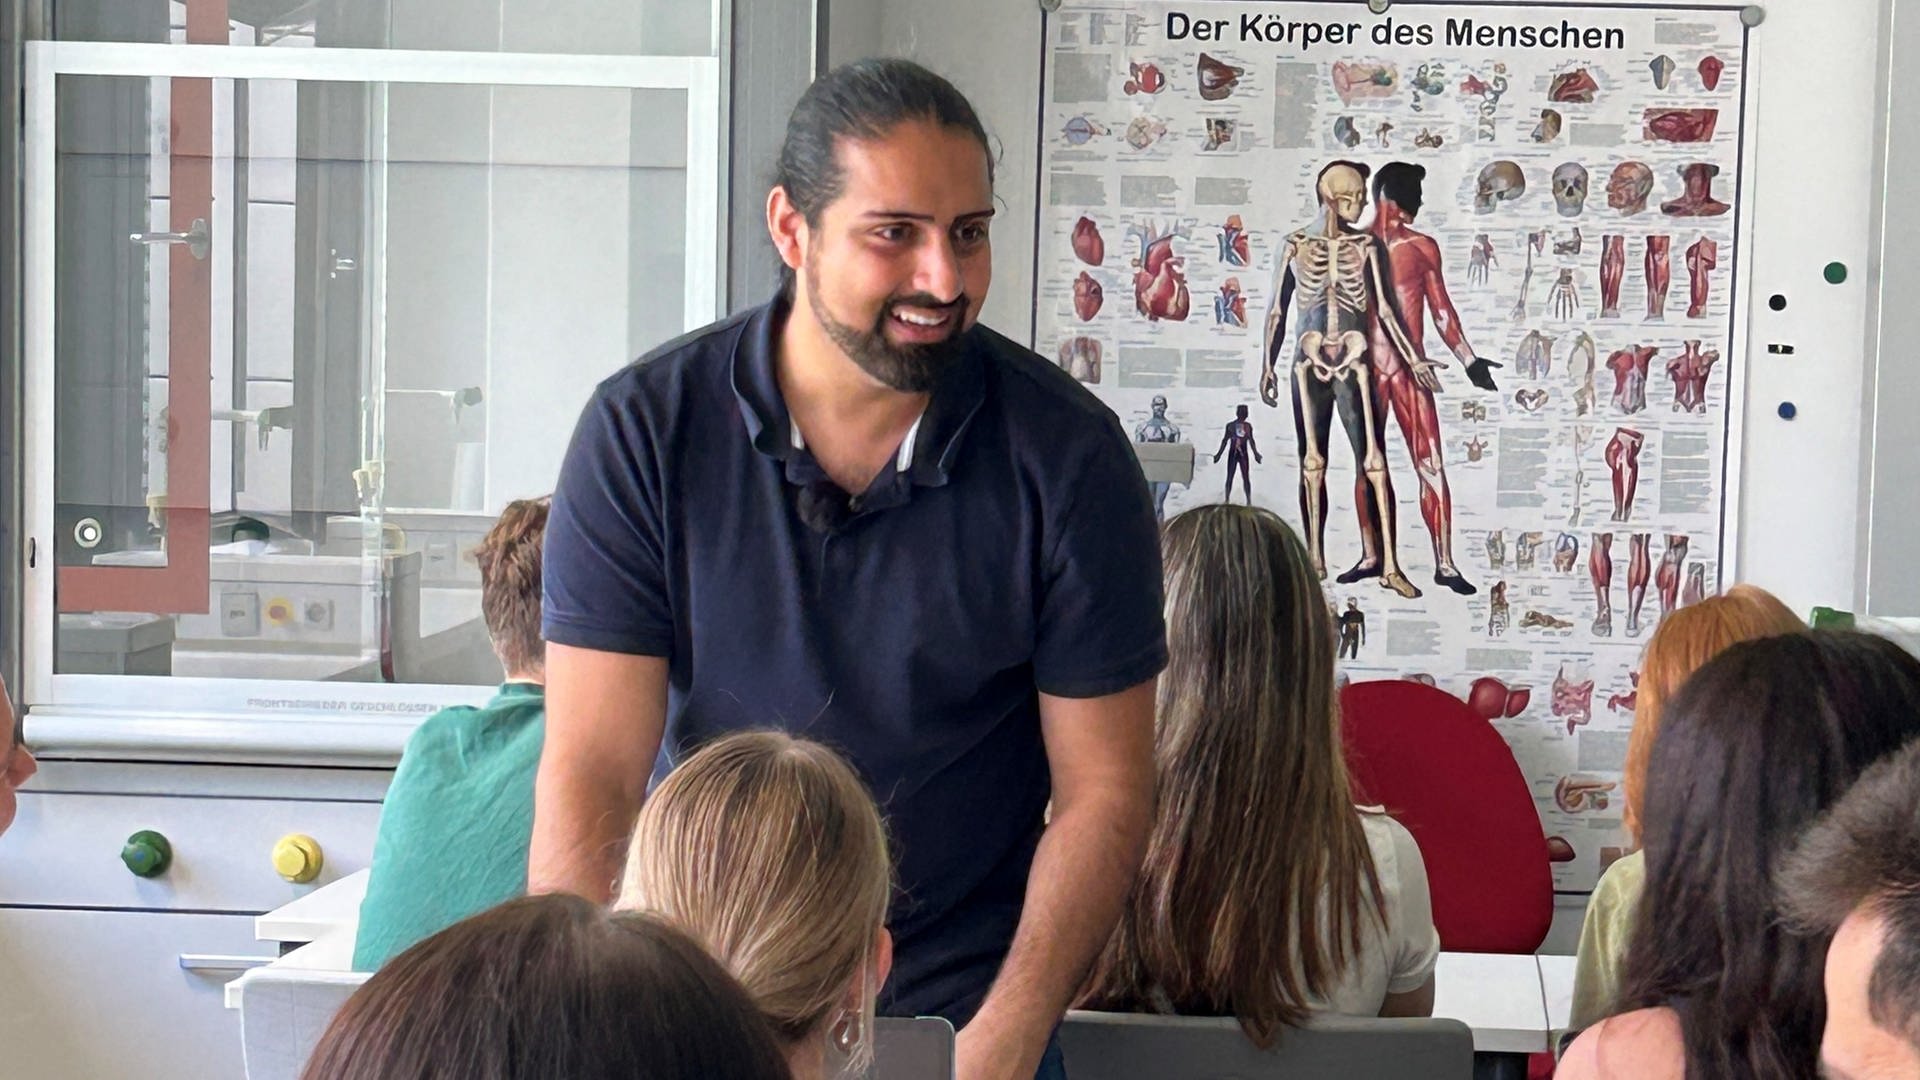 Die Schüler lieben ihn: Der beste Lehrer kommt aus Ludwigsburg